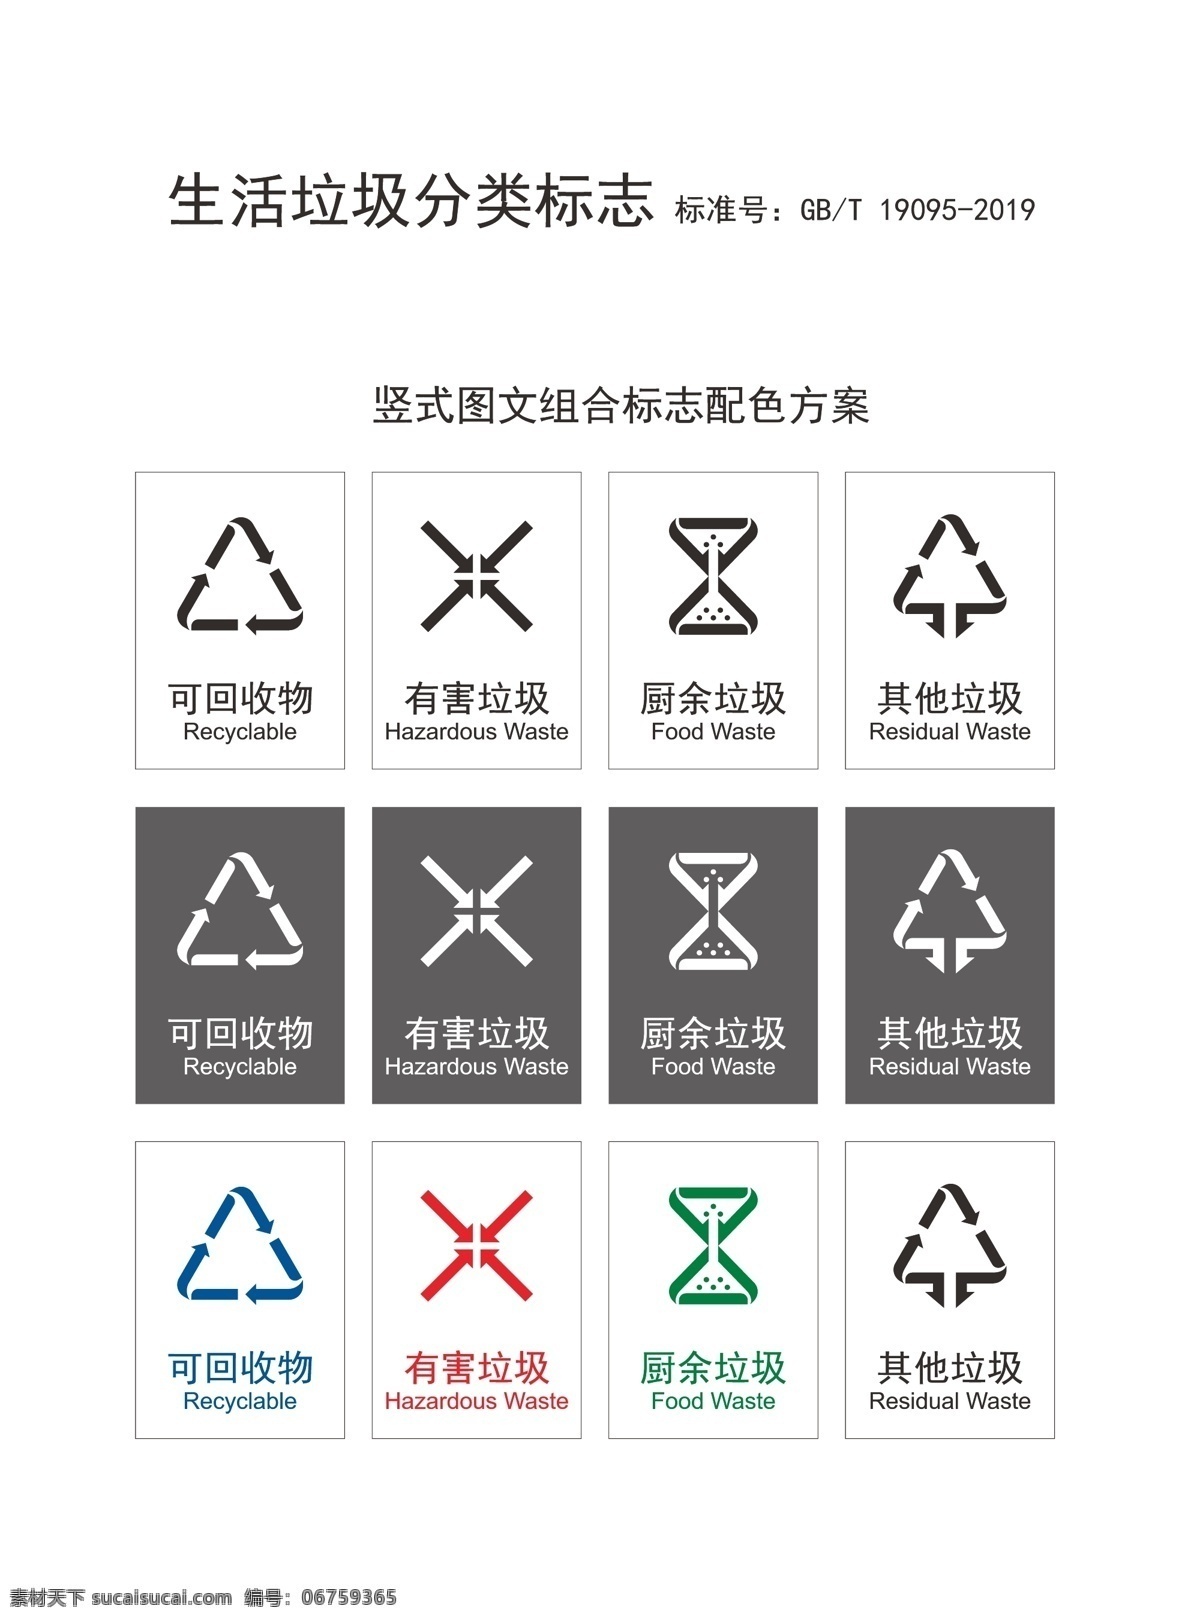 生活 垃圾 分类 标志 竖 式 图文 组合 垃圾分类 垃圾分类标识 logo 有害垃圾 厨余垃圾 可回收垃圾 其他垃圾 垃圾分类标志 垃圾分类矢量 垃圾分类标准 生活垃圾分类 公共标识标志 2019 标志图标